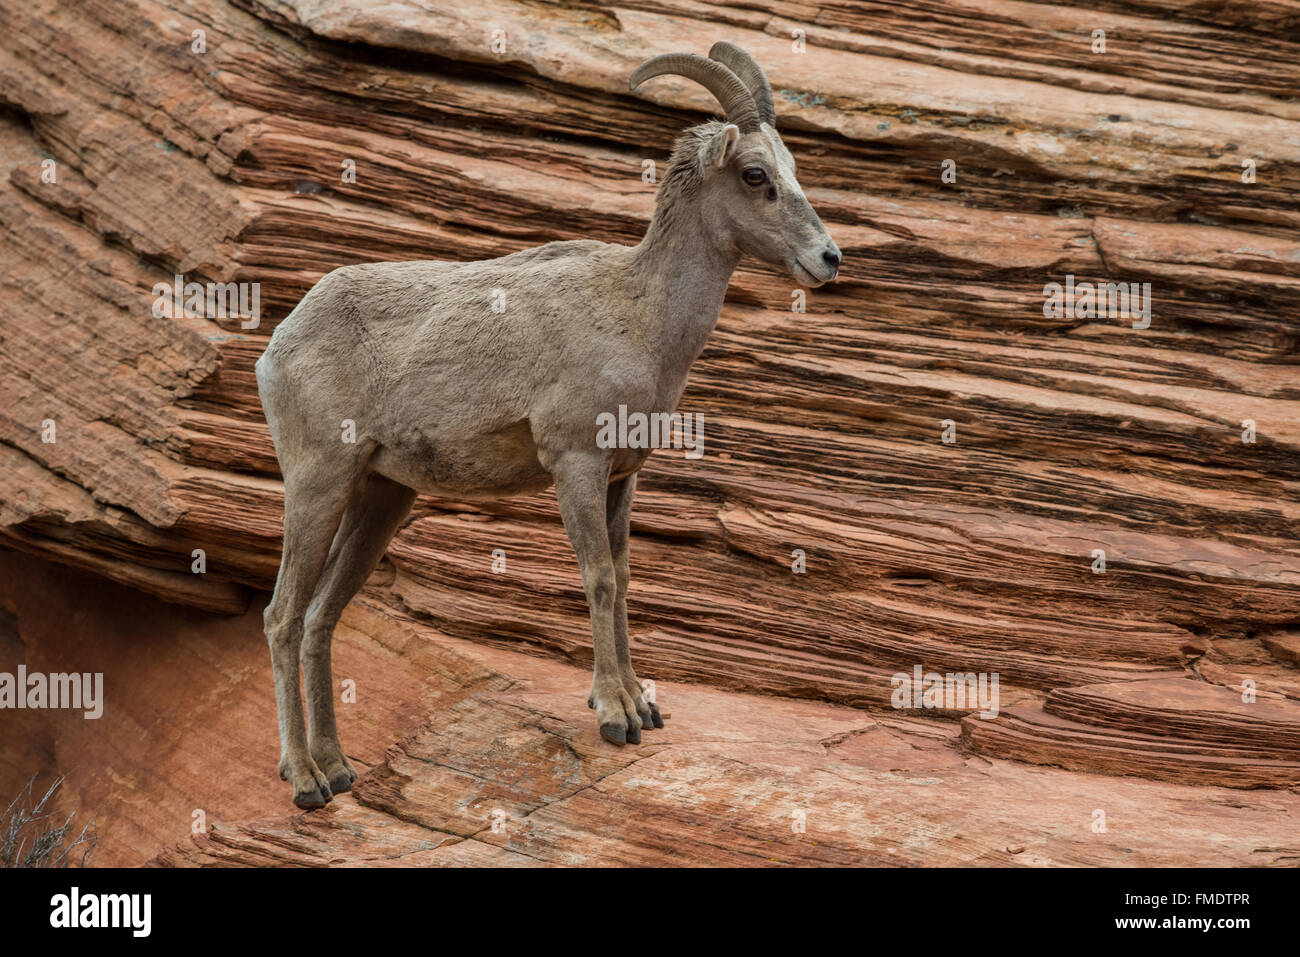 Mouflon désert permanent brebis sur slick rock, Zion National Park, Utah Banque D'Images